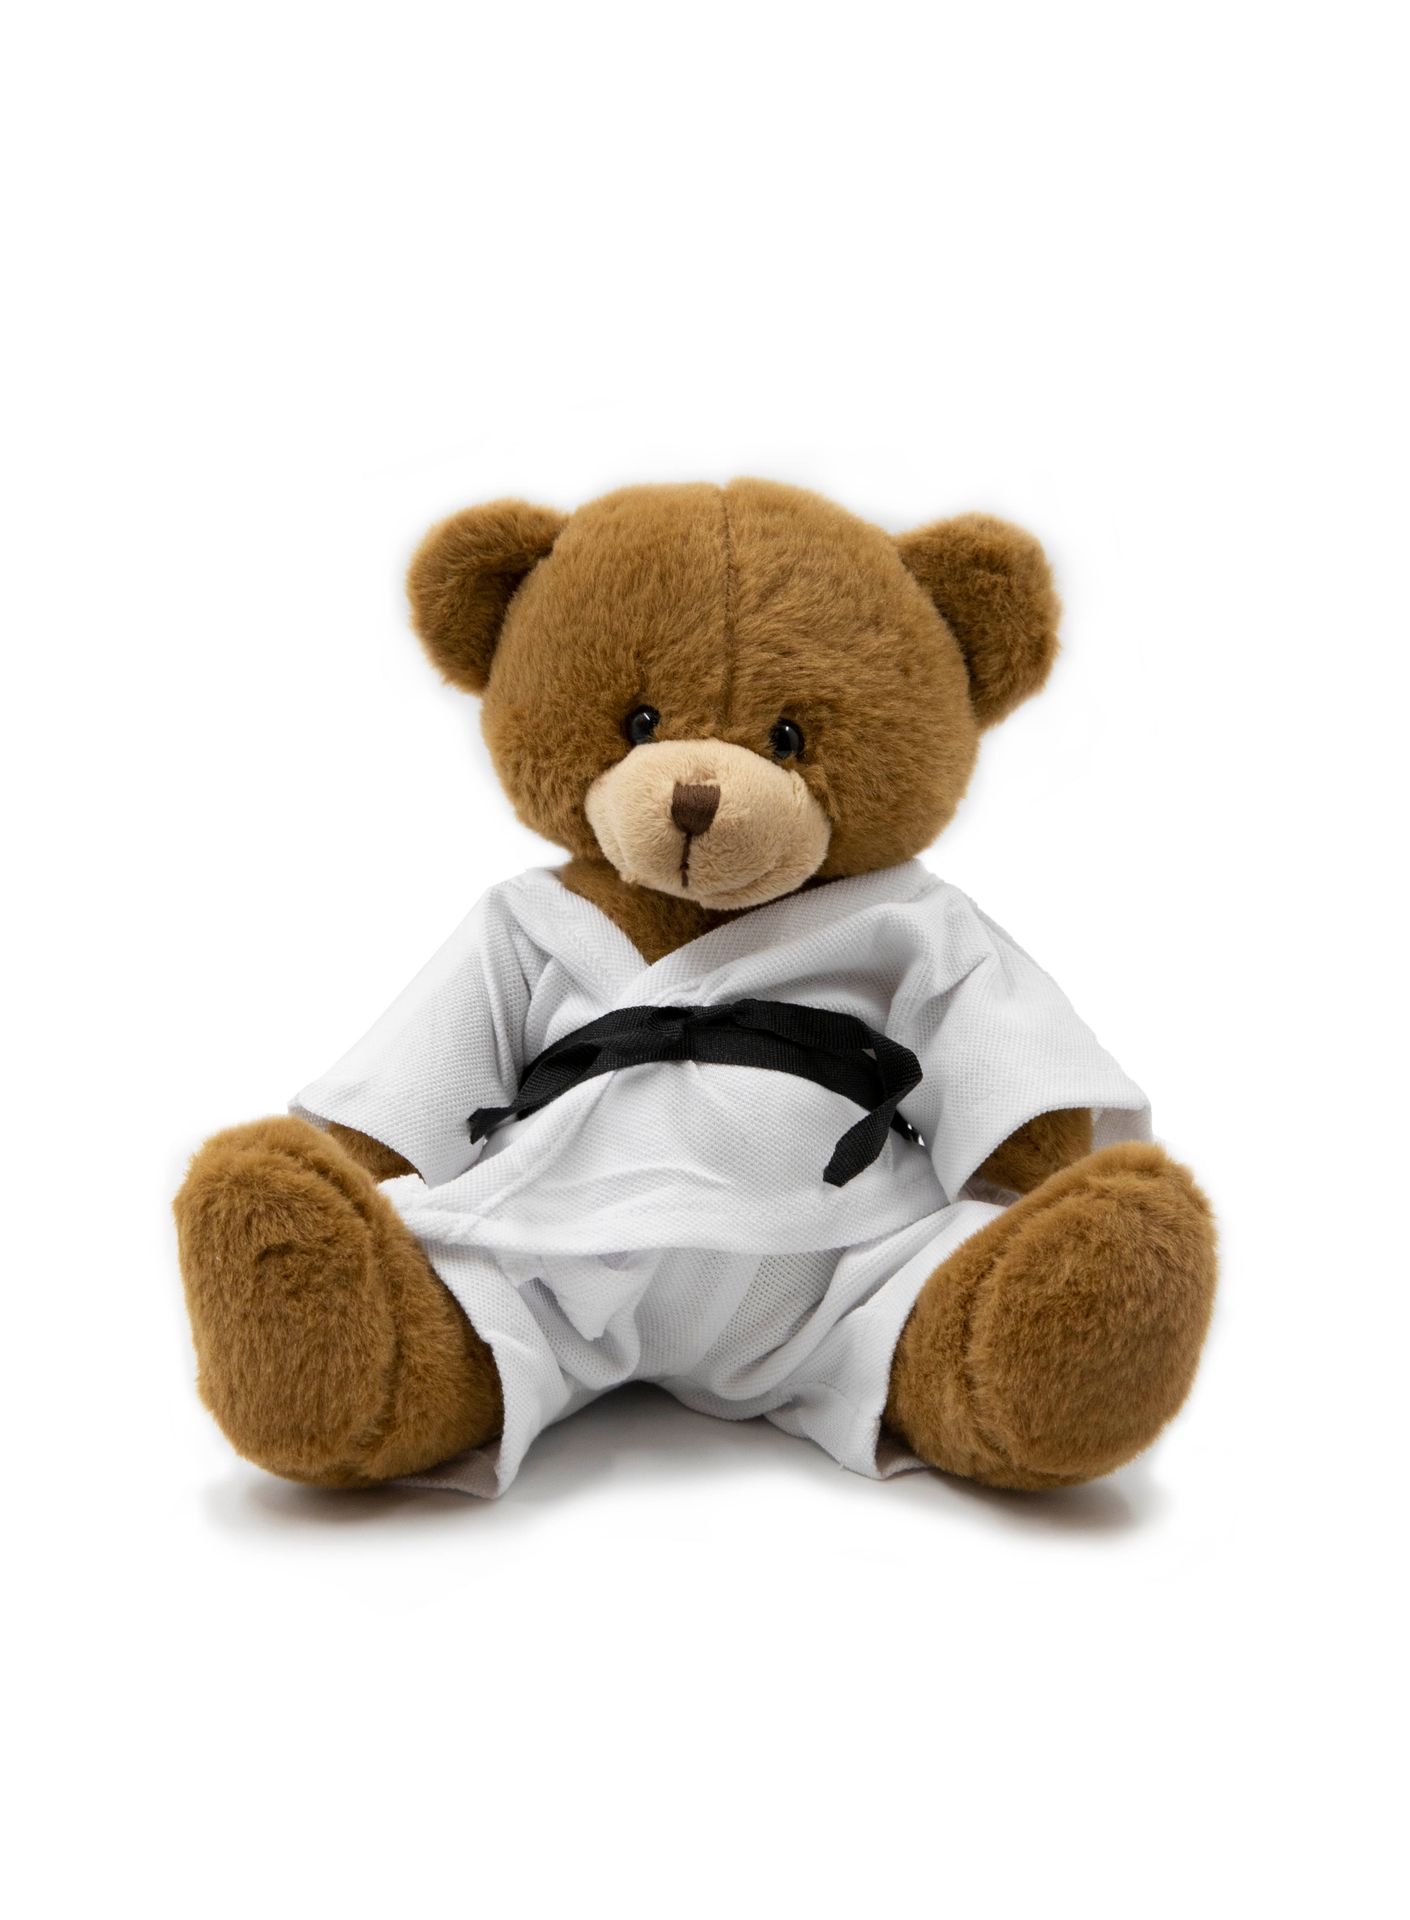 Teddy RINER Teddybär*. *Personalisierte Widmung von Teddy Riner